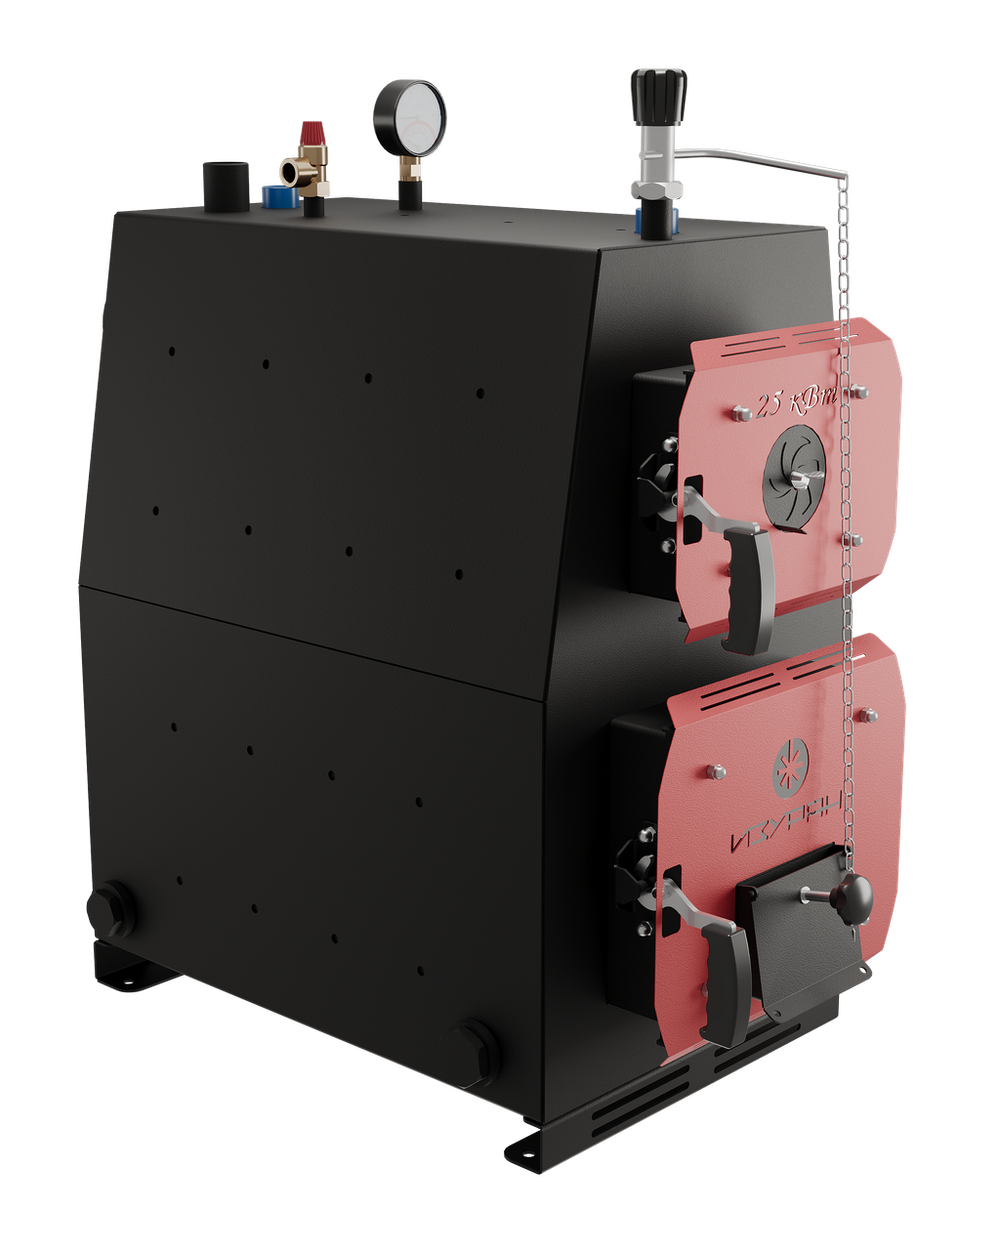 Твердотопливный котел длительного горения Изуран-50 на 50 кВт. Отапливаемое помещение до 1350 куб.м. Производитель - Изуран